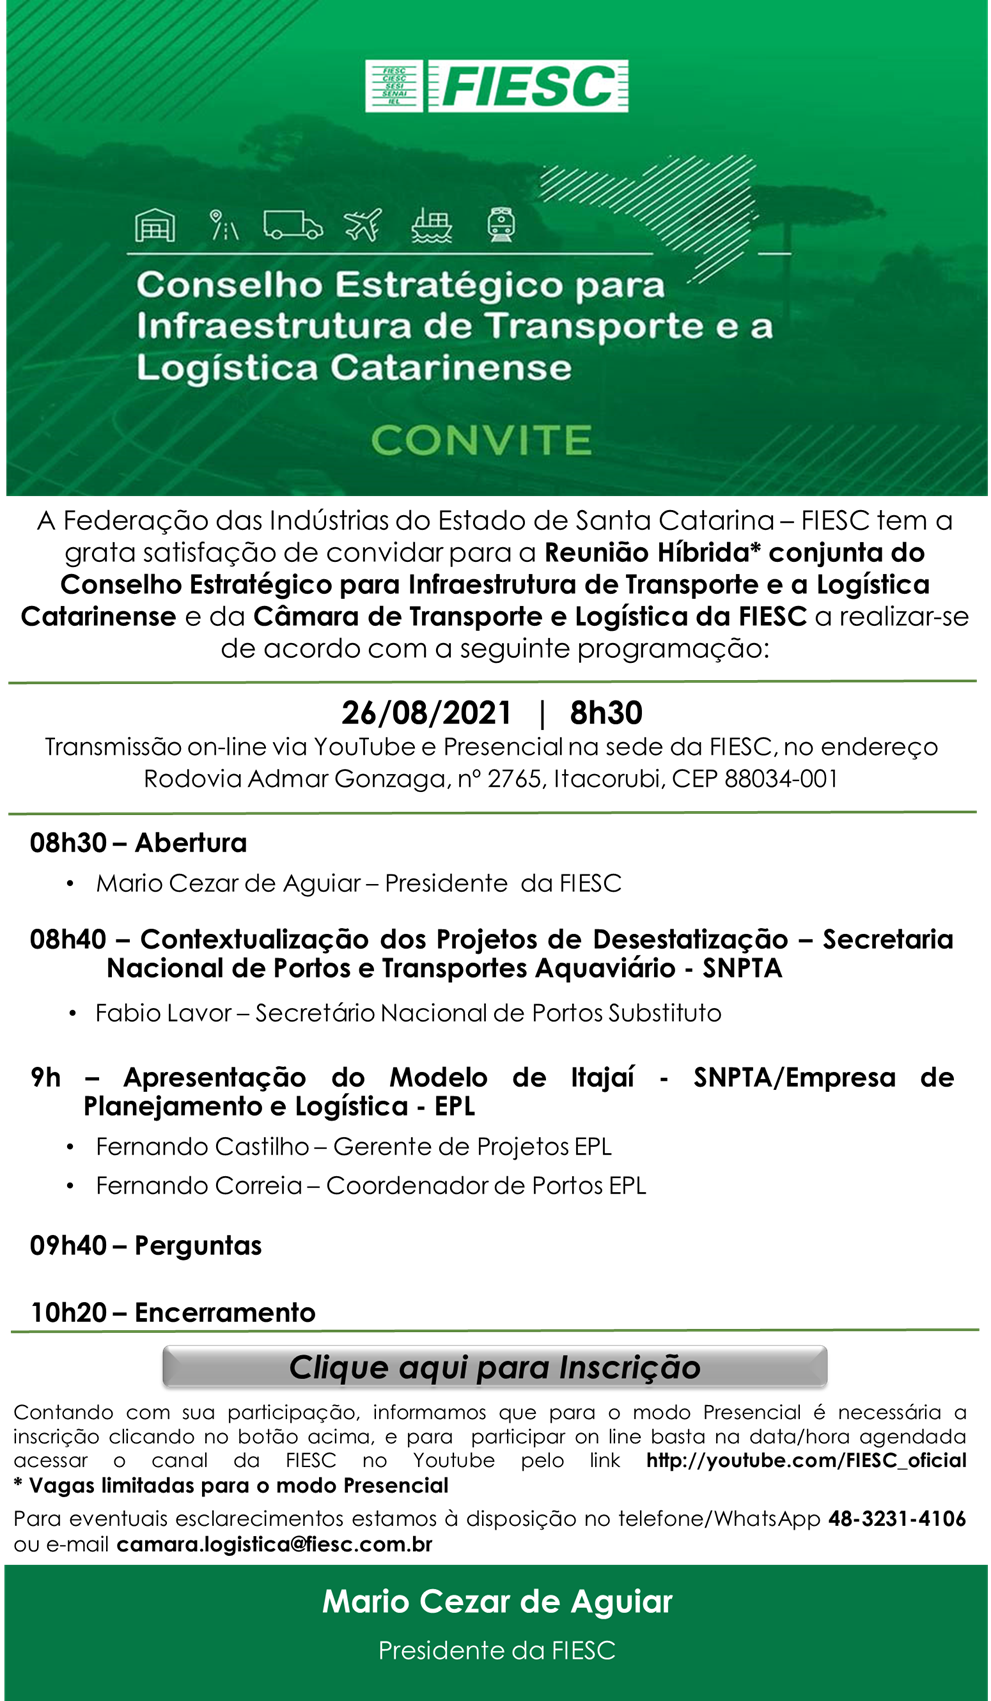 Reunião Híbrida* conjunta do Conselho Estratégico para Infraestrutura de Transporte e a Logística Catarinense e da Câmara de Transporte e Logística da FIESC 